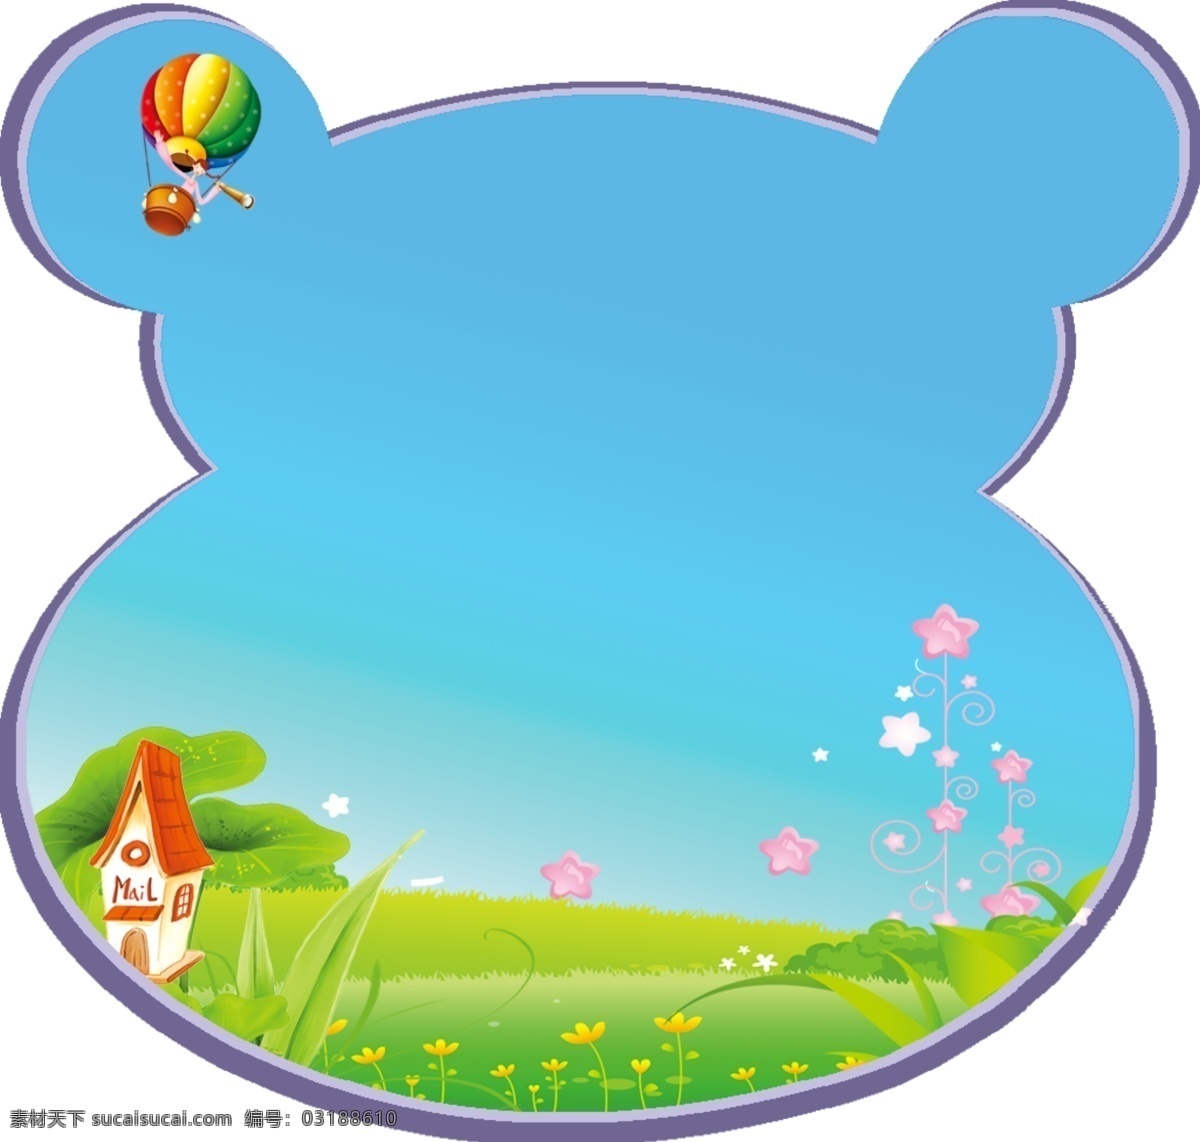 维尼 幼儿园 形状 花 草 气球 蓝天 国内广告设计 广告设计模板 源文件